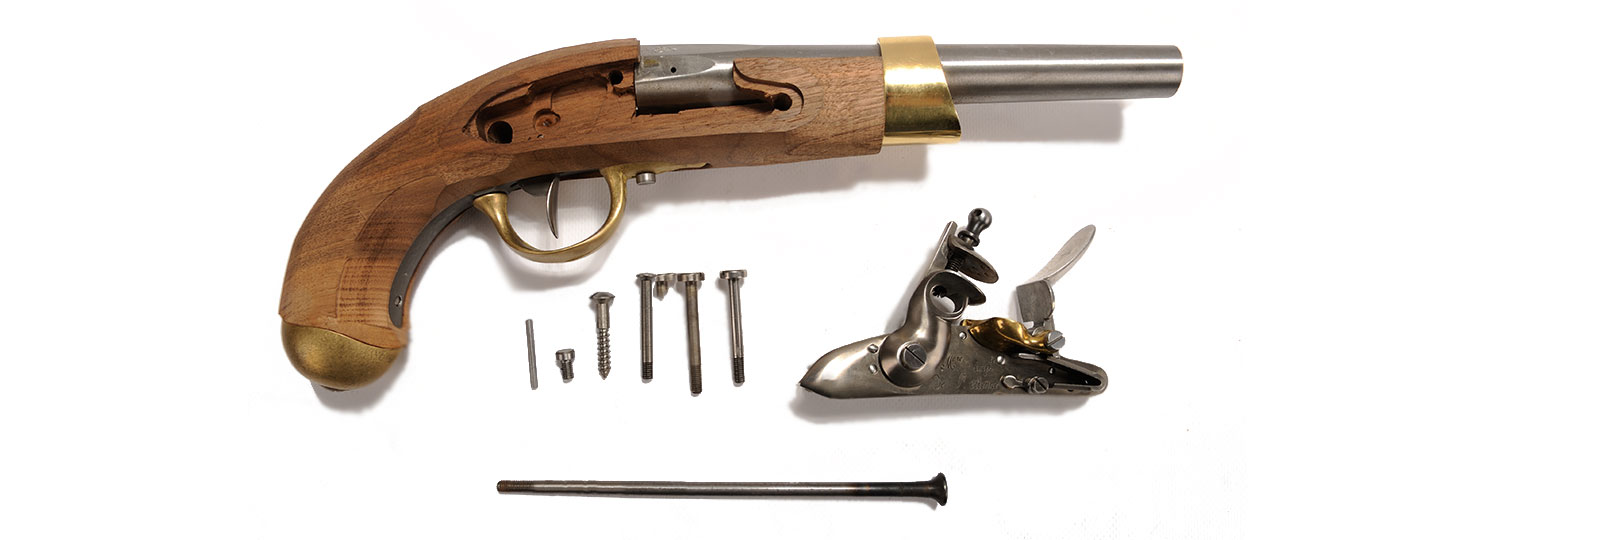 Kit pistola An XIII